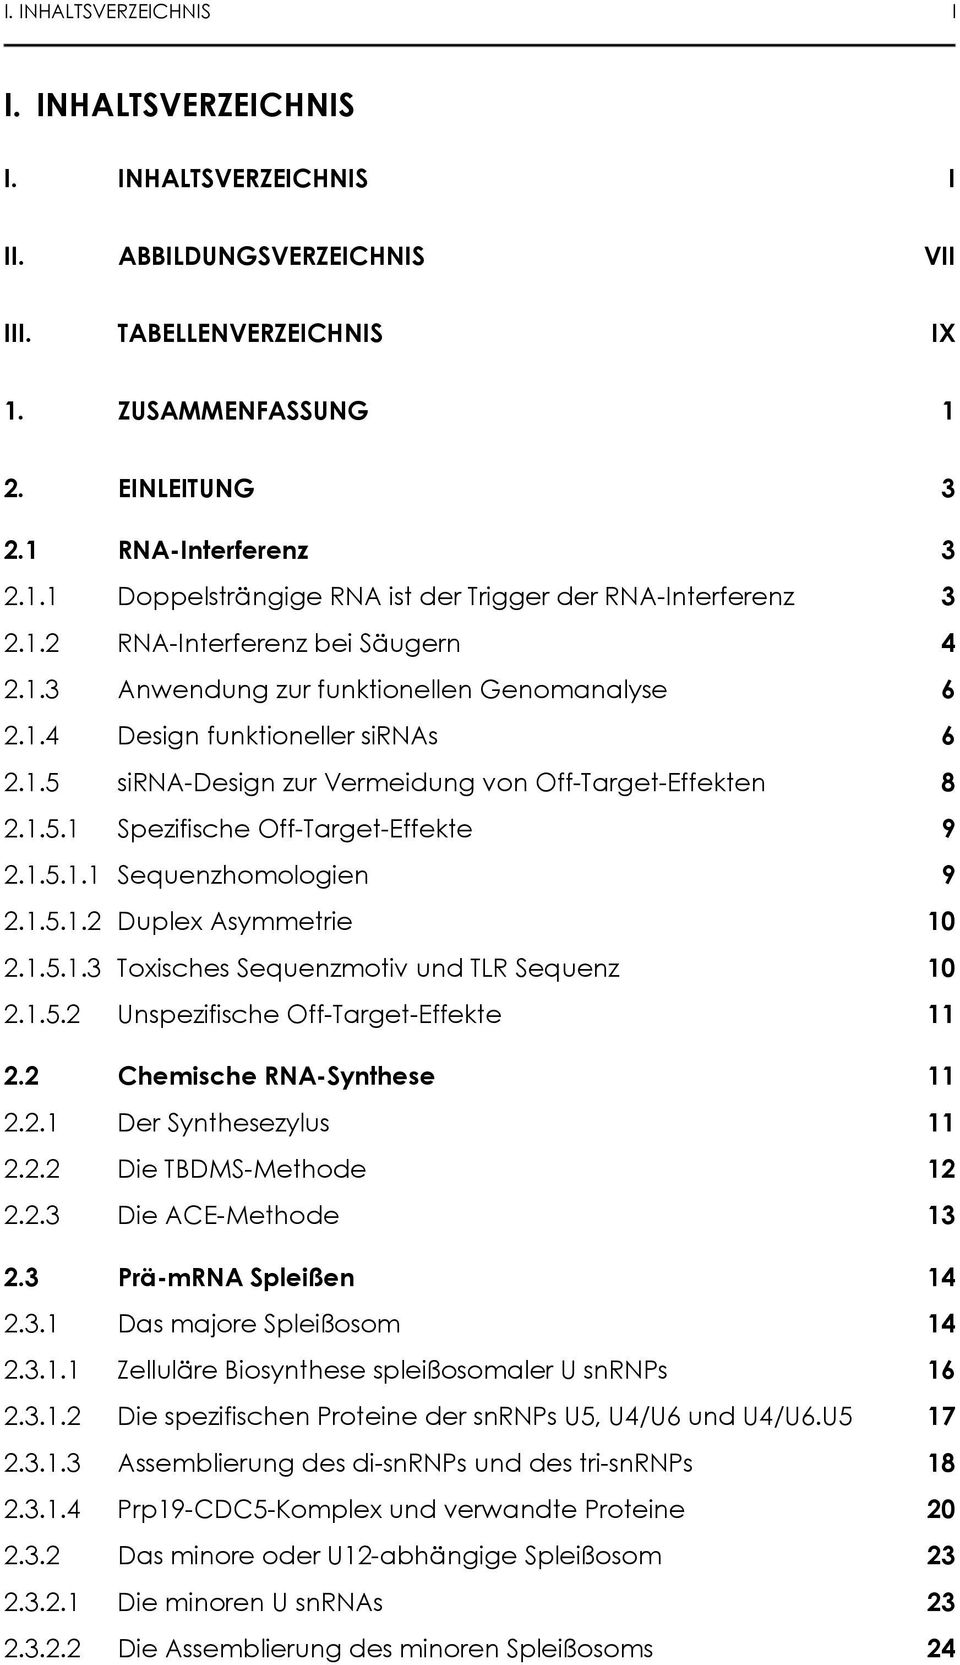 1.5.1.1 Sequenzhomologien 9 2.1.5.1.2 Duplex Asymmetrie 10 2.1.5.1.3 Toxisches Sequenzmotiv und TLR Sequenz 10 2.1.5.2 Unspezifische Off-Target-Effekte 11 2.2 Chemische RNA-Synthese 11 2.2.1 Der Synthesezylus 11 2.